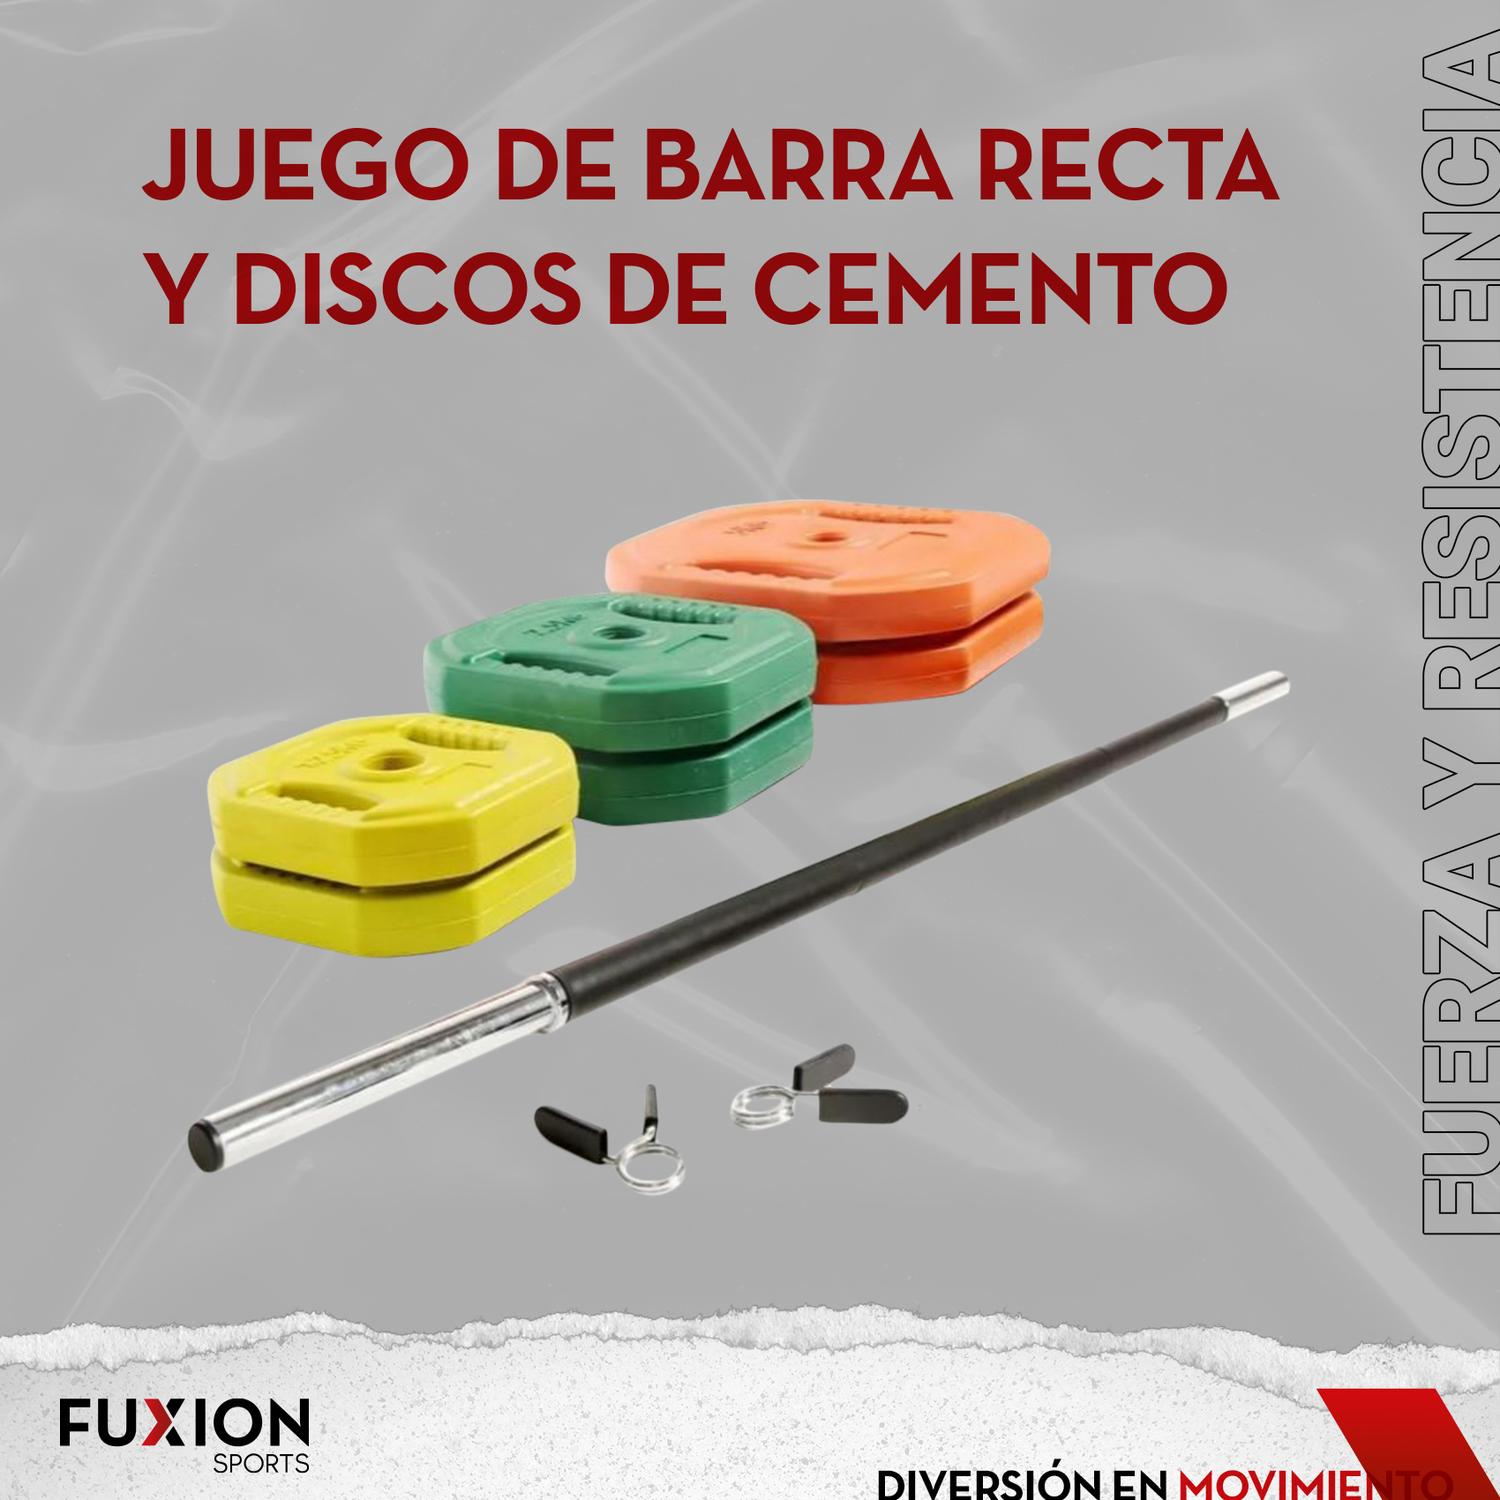 Juego Barra Recta con Discos 20 kg. Fuxion Sports, Cemento